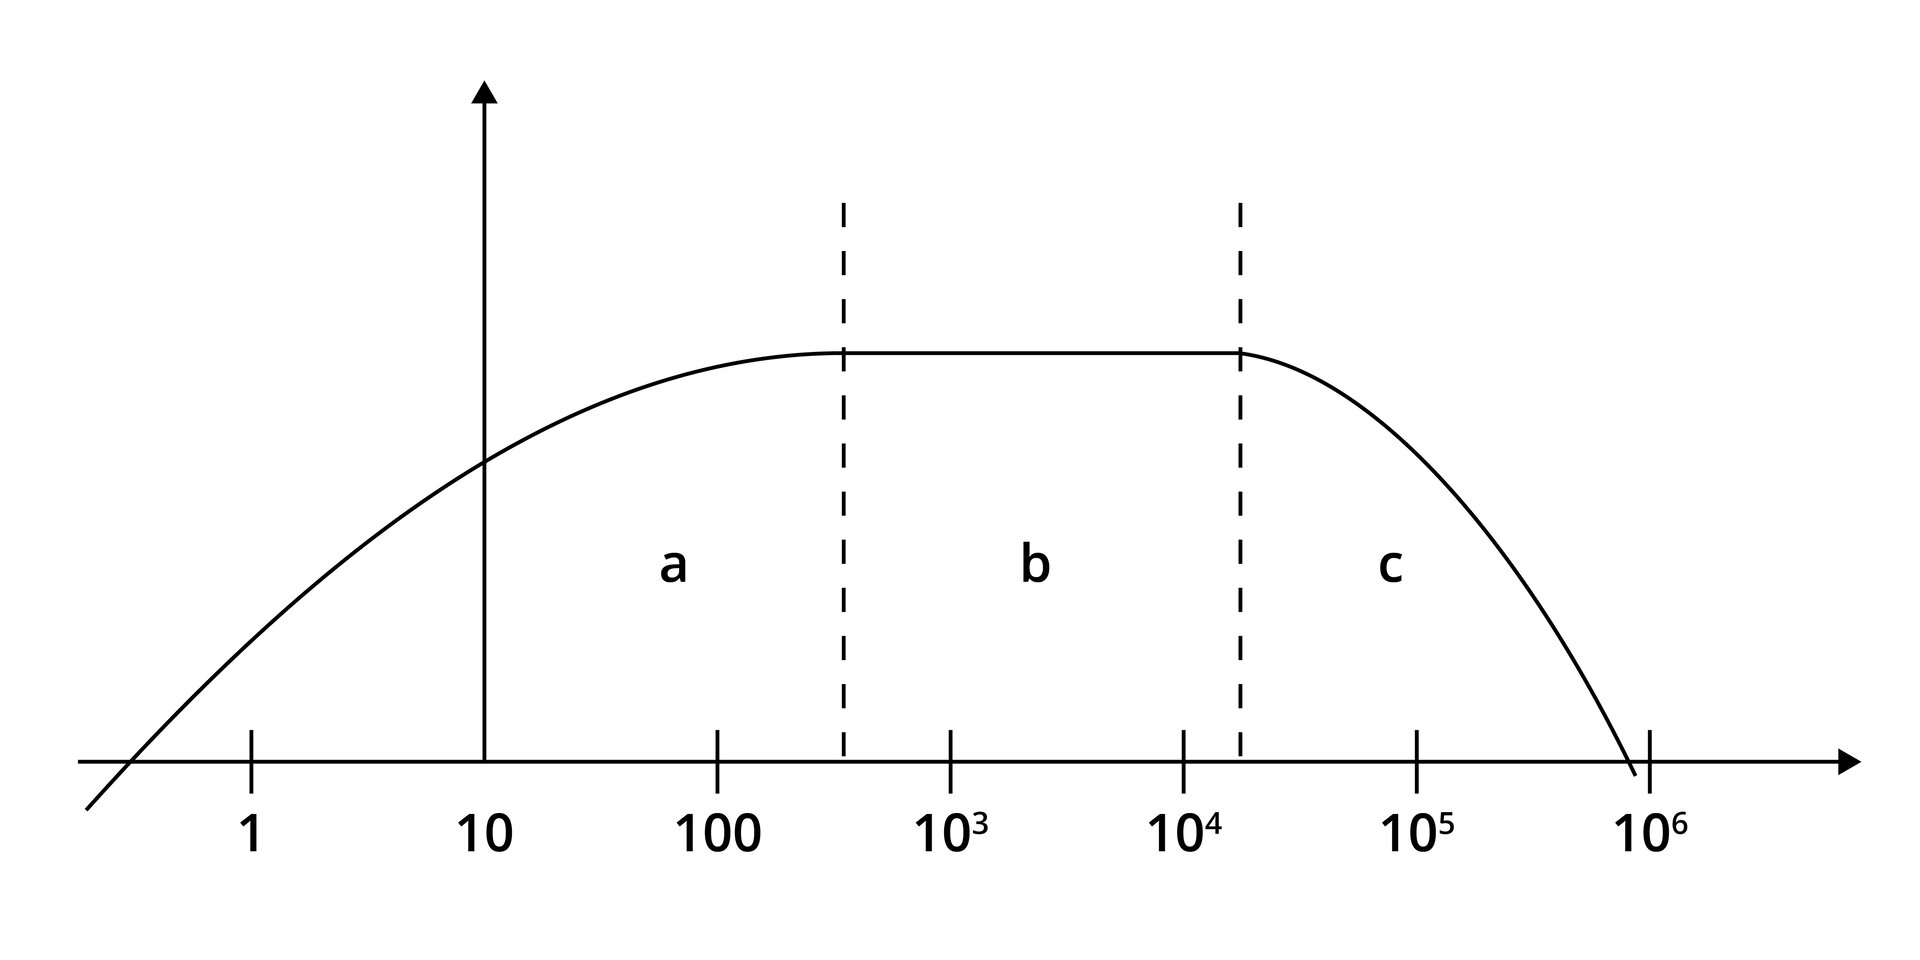 Ilustracja przedstawia wykres. Na poziomej lini wykresu ef Herców ujęte są wartości jeden, dziesięć, od którego ciągnie się w górę strzałka opisana jako ka u, niżej de be w nawiasie oraz sto i potęgi od liczby dziesięć. Przed punktem jeden zaczyna się parabola, która kończy się w punkcie dziesięć do potęgi szóstej. Obszar paraboli podzielony jest na trzy części pionowymi przerywanymi liniami. Pierwsza biegnie w górę między wartością dziesięć a dziesięć do trzeciej, druga między dziesięć do czwartej a dziesięć do piątej potęgi, znacznie bliżej tej pierwszej. Obszary nazwane są od lewej a, be oraz ce. Oznaczające odpowiednio małe, średnie oraz duże częstotliwości.